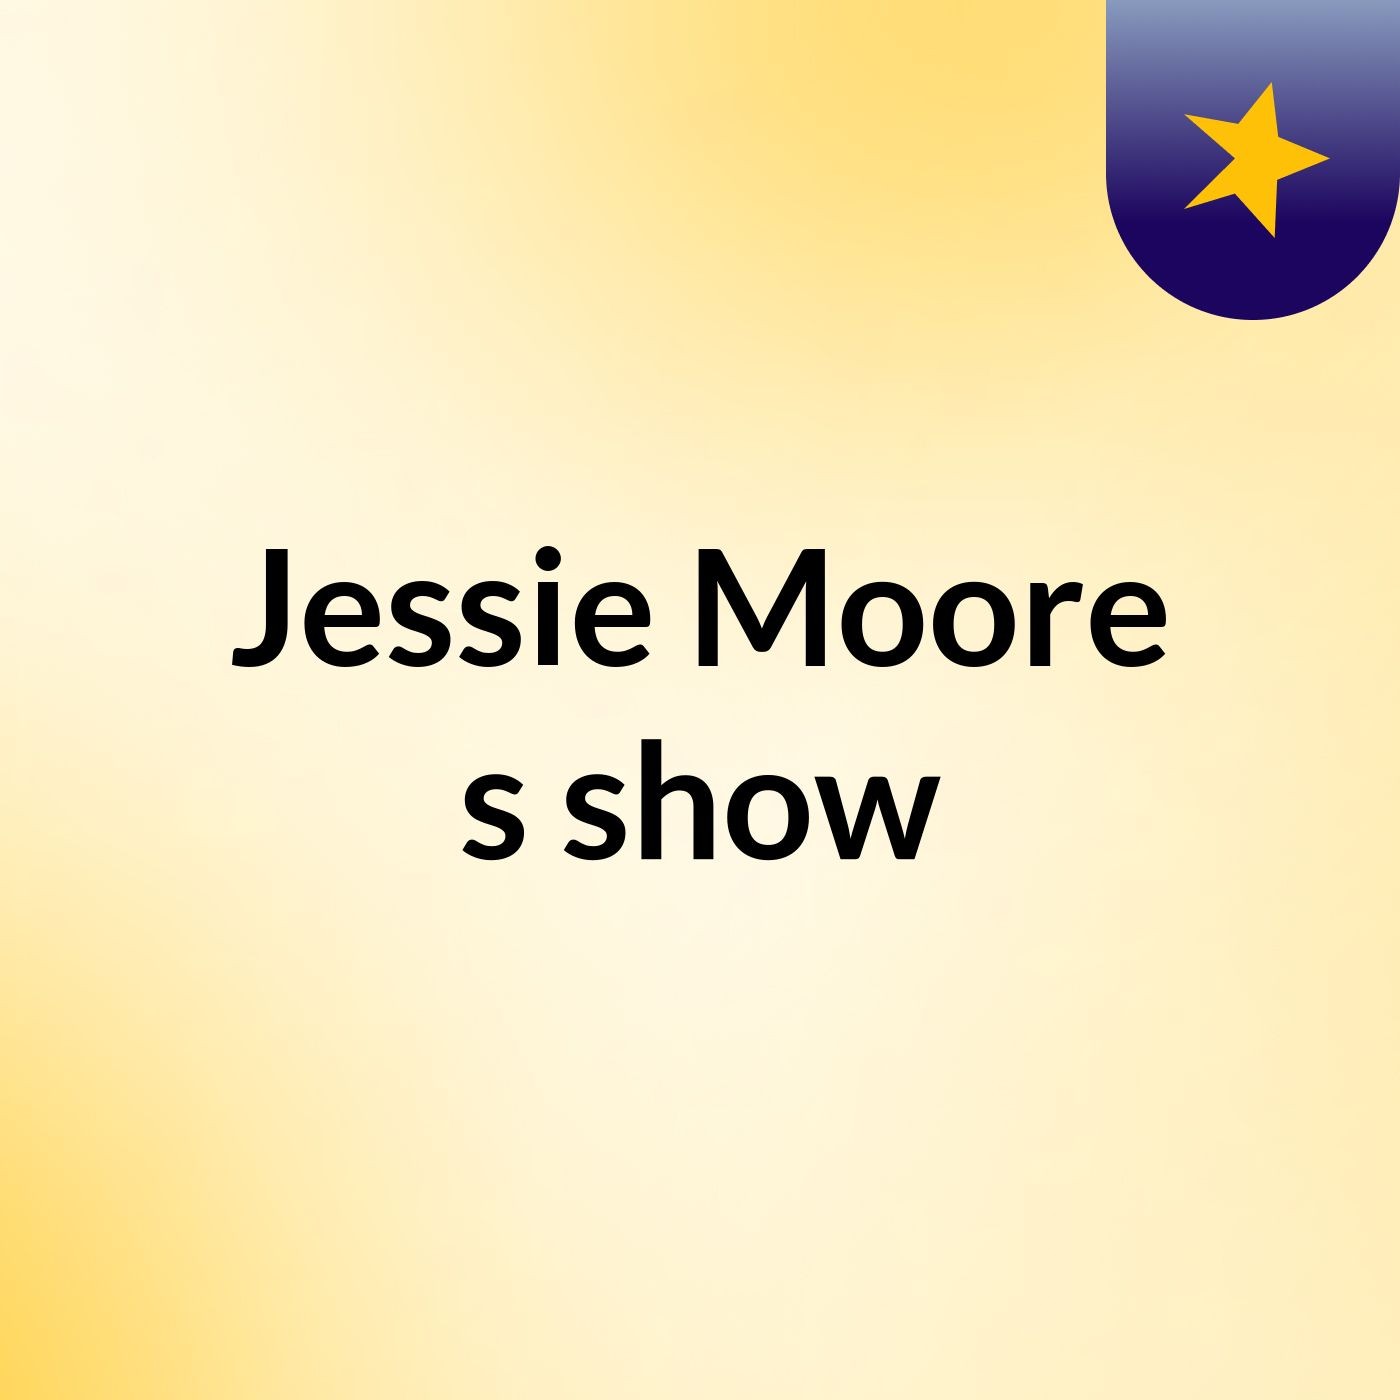 Jessie Moore's show